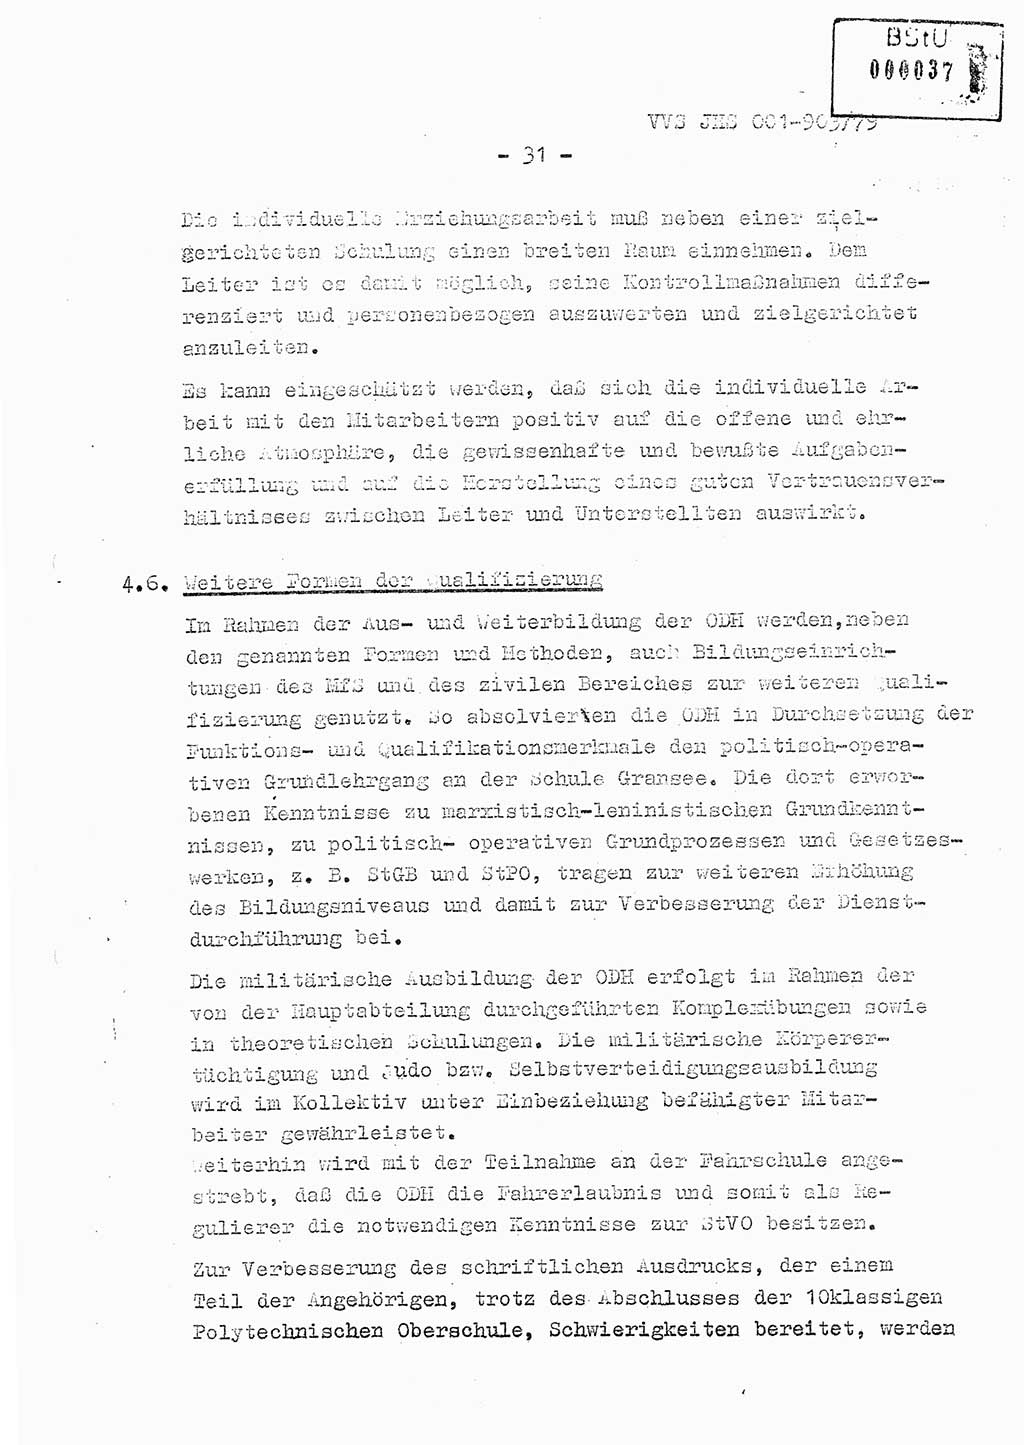 Fachschulabschlußarbeit Oberleutnant Jochen Pfeffer (HA Ⅸ/AGL), Ministerium für Staatssicherheit (MfS) [Deutsche Demokratische Republik (DDR)], Juristische Hochschule (JHS), Vertrauliche Verschlußsache (VVS) 001-903/79, Potsdam 1979, Seite 31 (FS-Abschl.-Arb. MfS DDR JHS VVS 001-903/79 1979, S. 31)